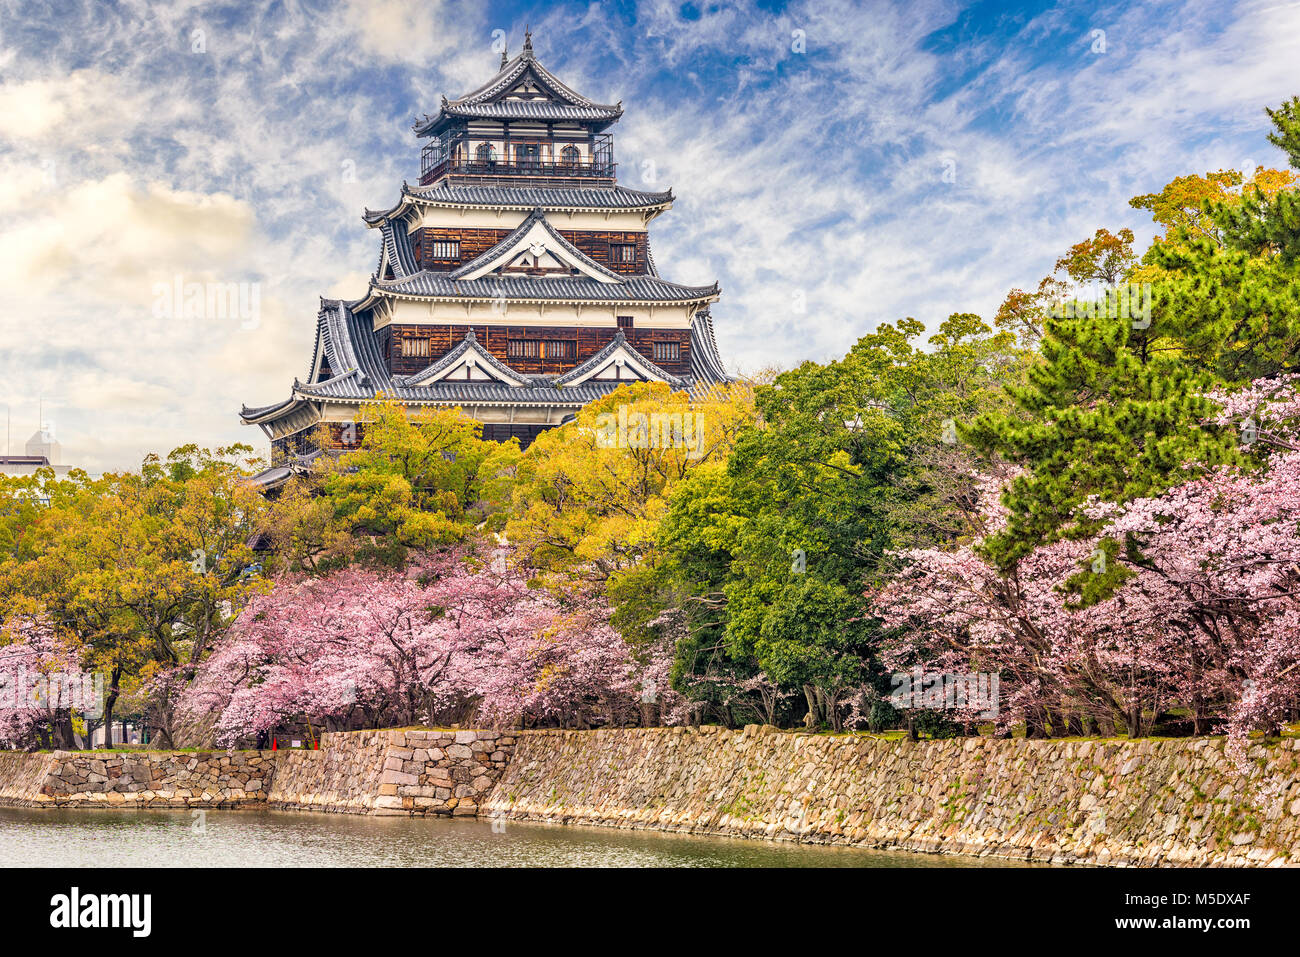 Hiroshima, Japan castle in spring. Stock Photo